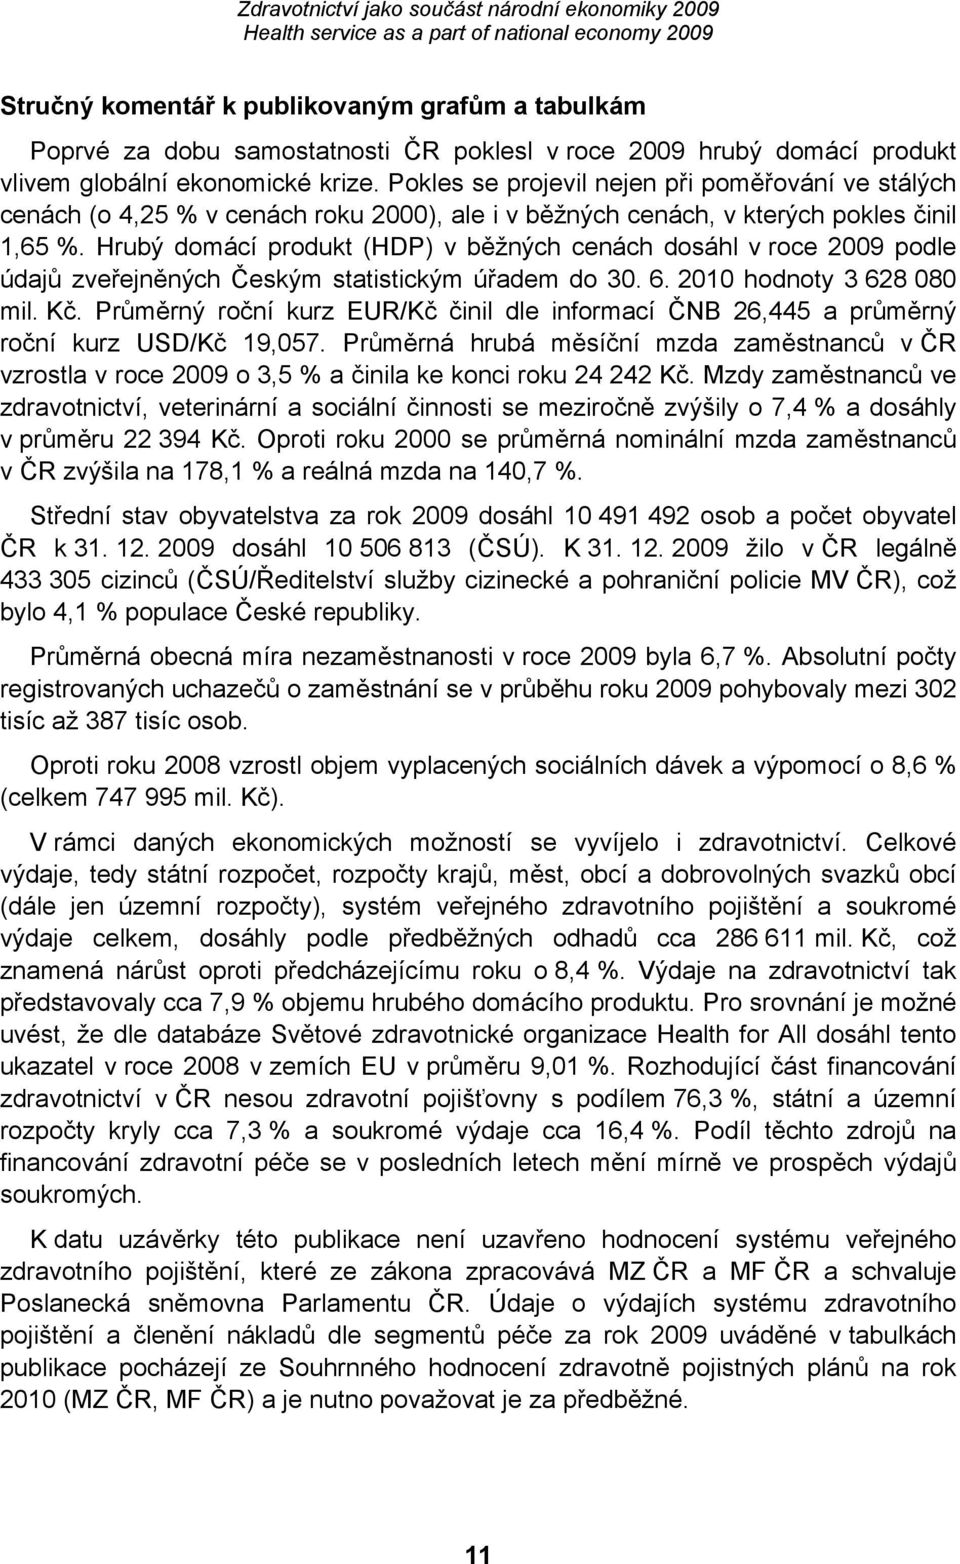 Hrubý domácí produkt (HDP) v běžných cenách dosáhl v roce 2009 podle údajů zveřejněných Českým statistickým úřadem do 30. 6. 2010 hodnoty 3 628 080 mil. Kč.